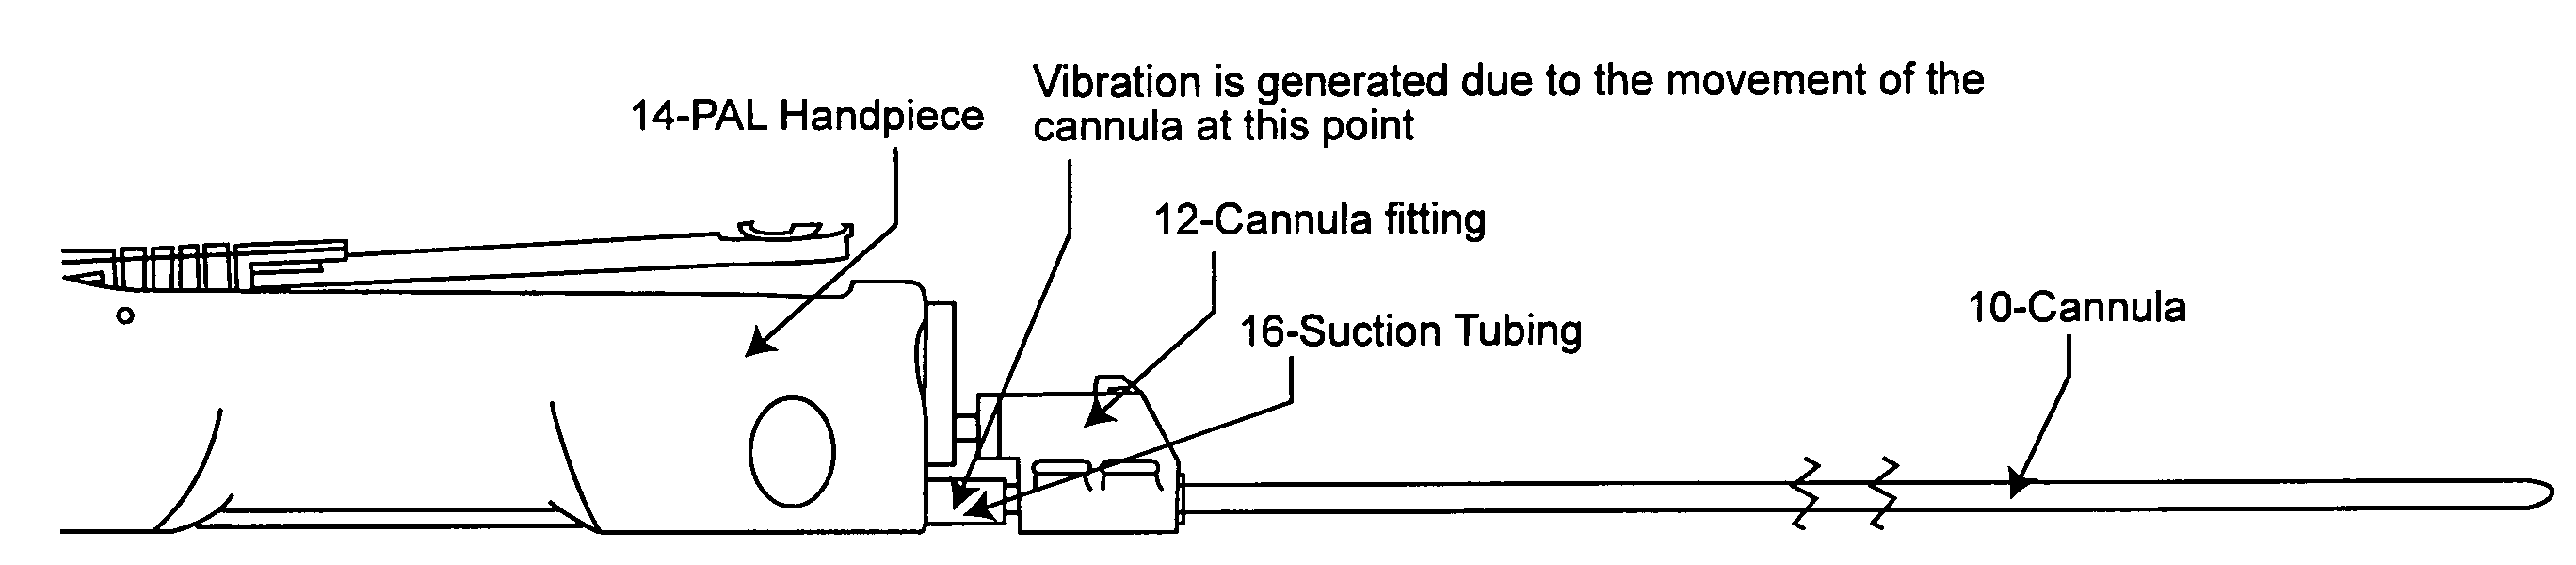 Low vibration tube